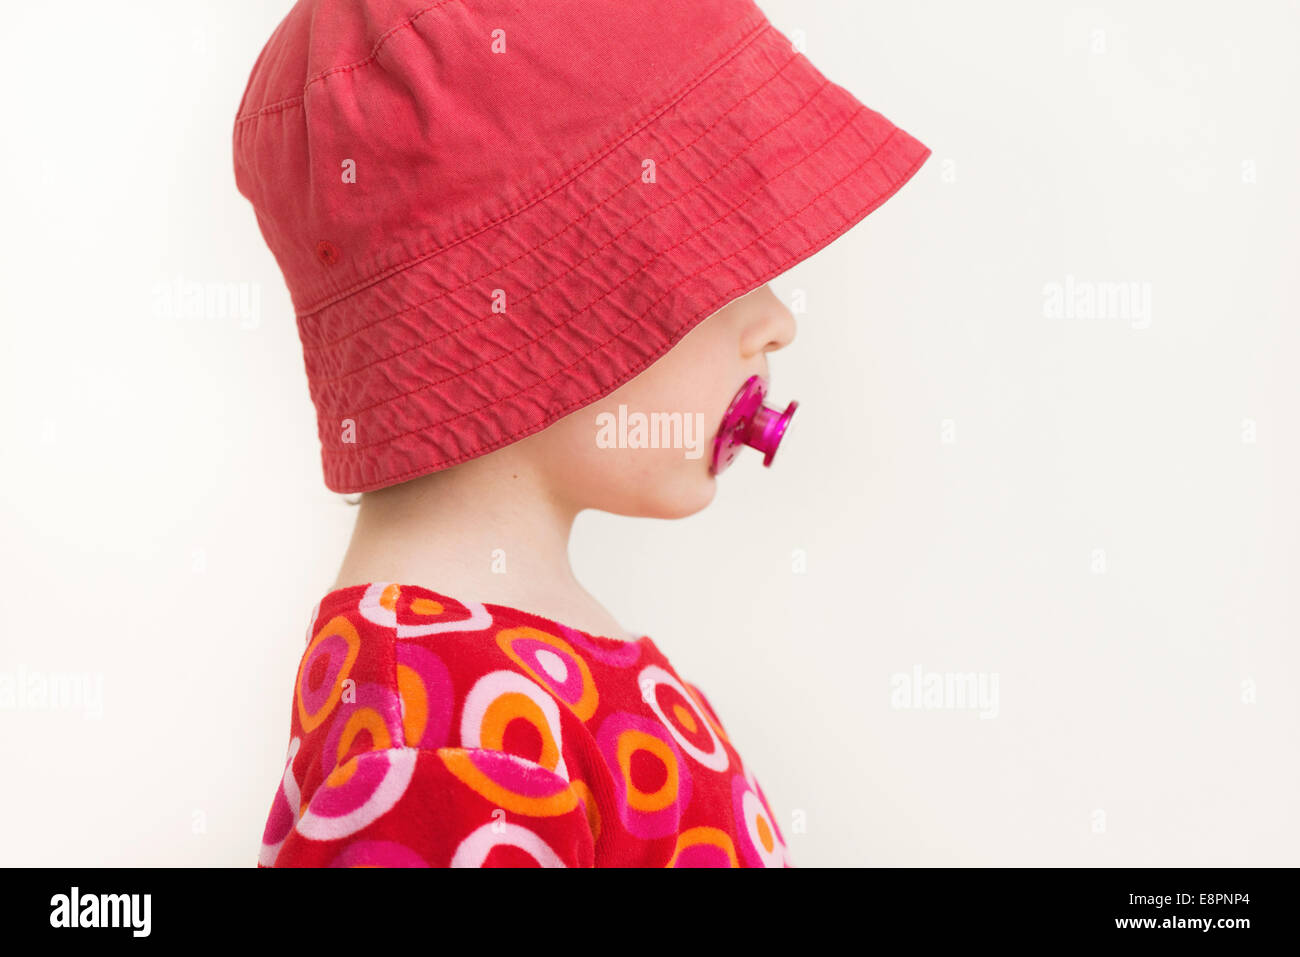 Profilbildnis von kleinen Mädchen mit rotem Hut und Schnuller Stockfoto